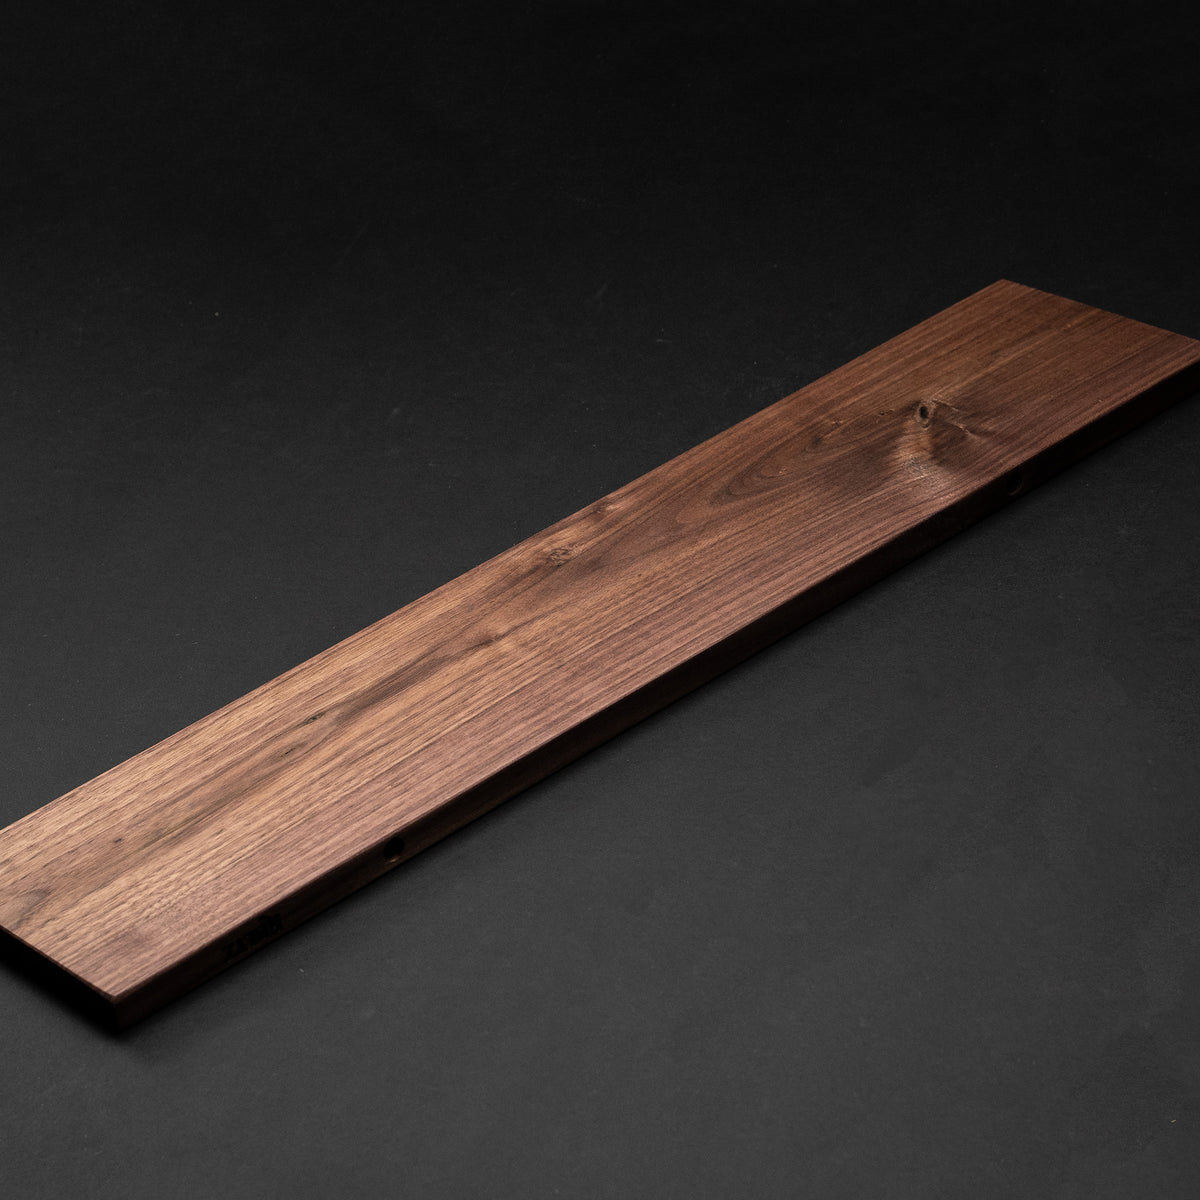 4/4 1” Black Walnut Boards - Kiln Dried Dimensional Lumber - Cut to Size Black Walnut Board